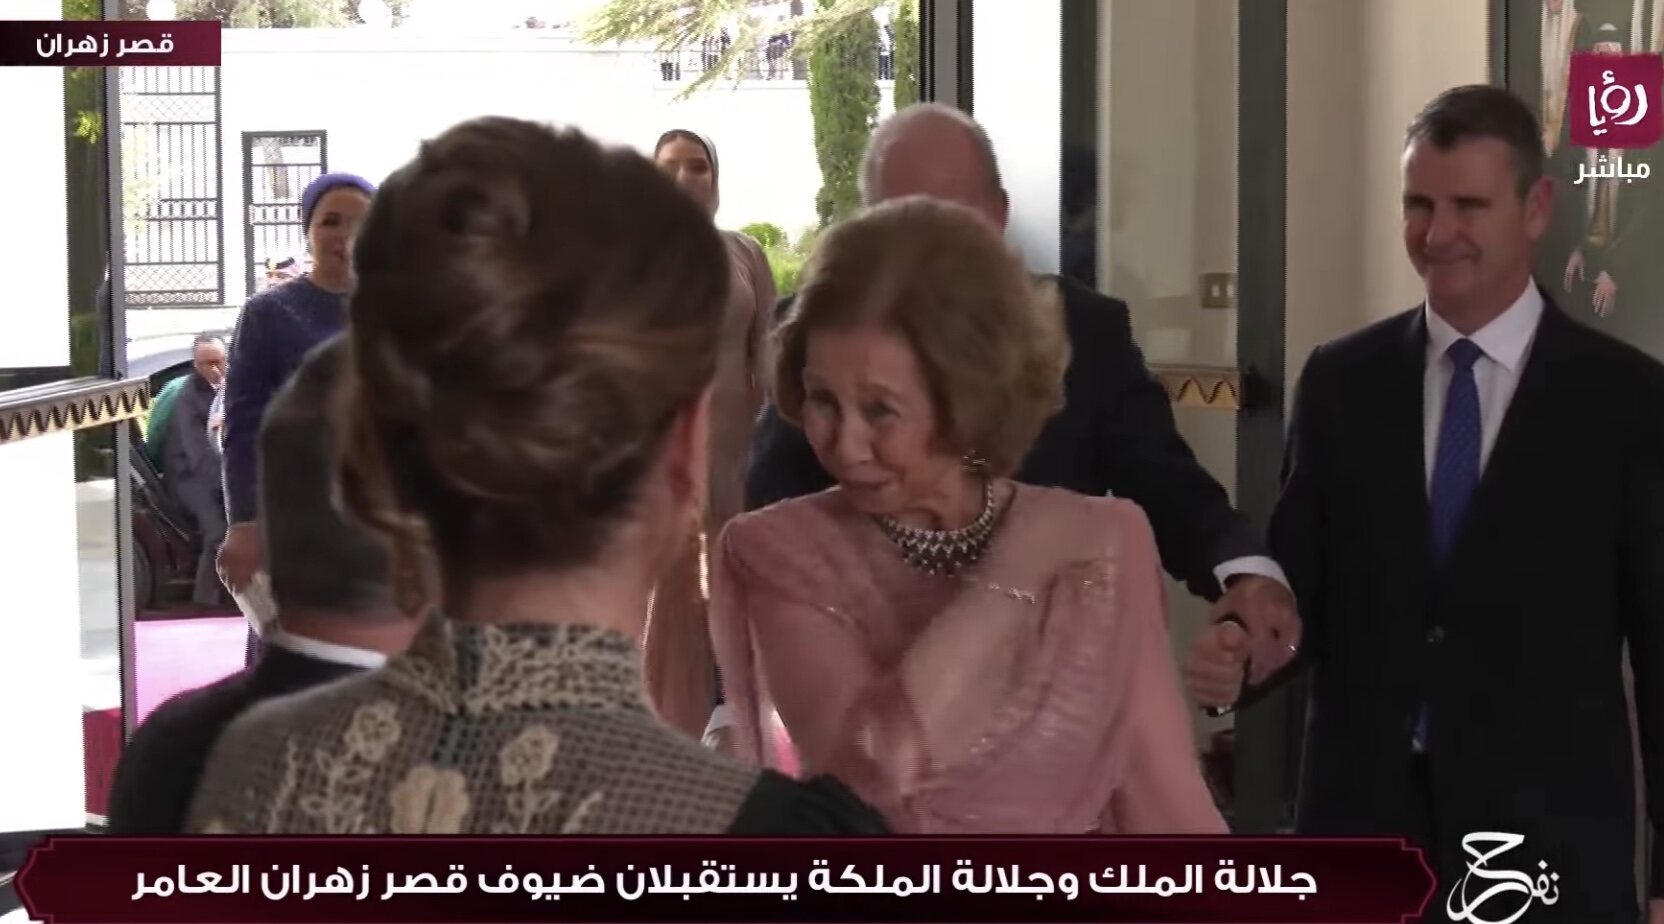 La Reina Sofía saluda a los Reyes de Jordania